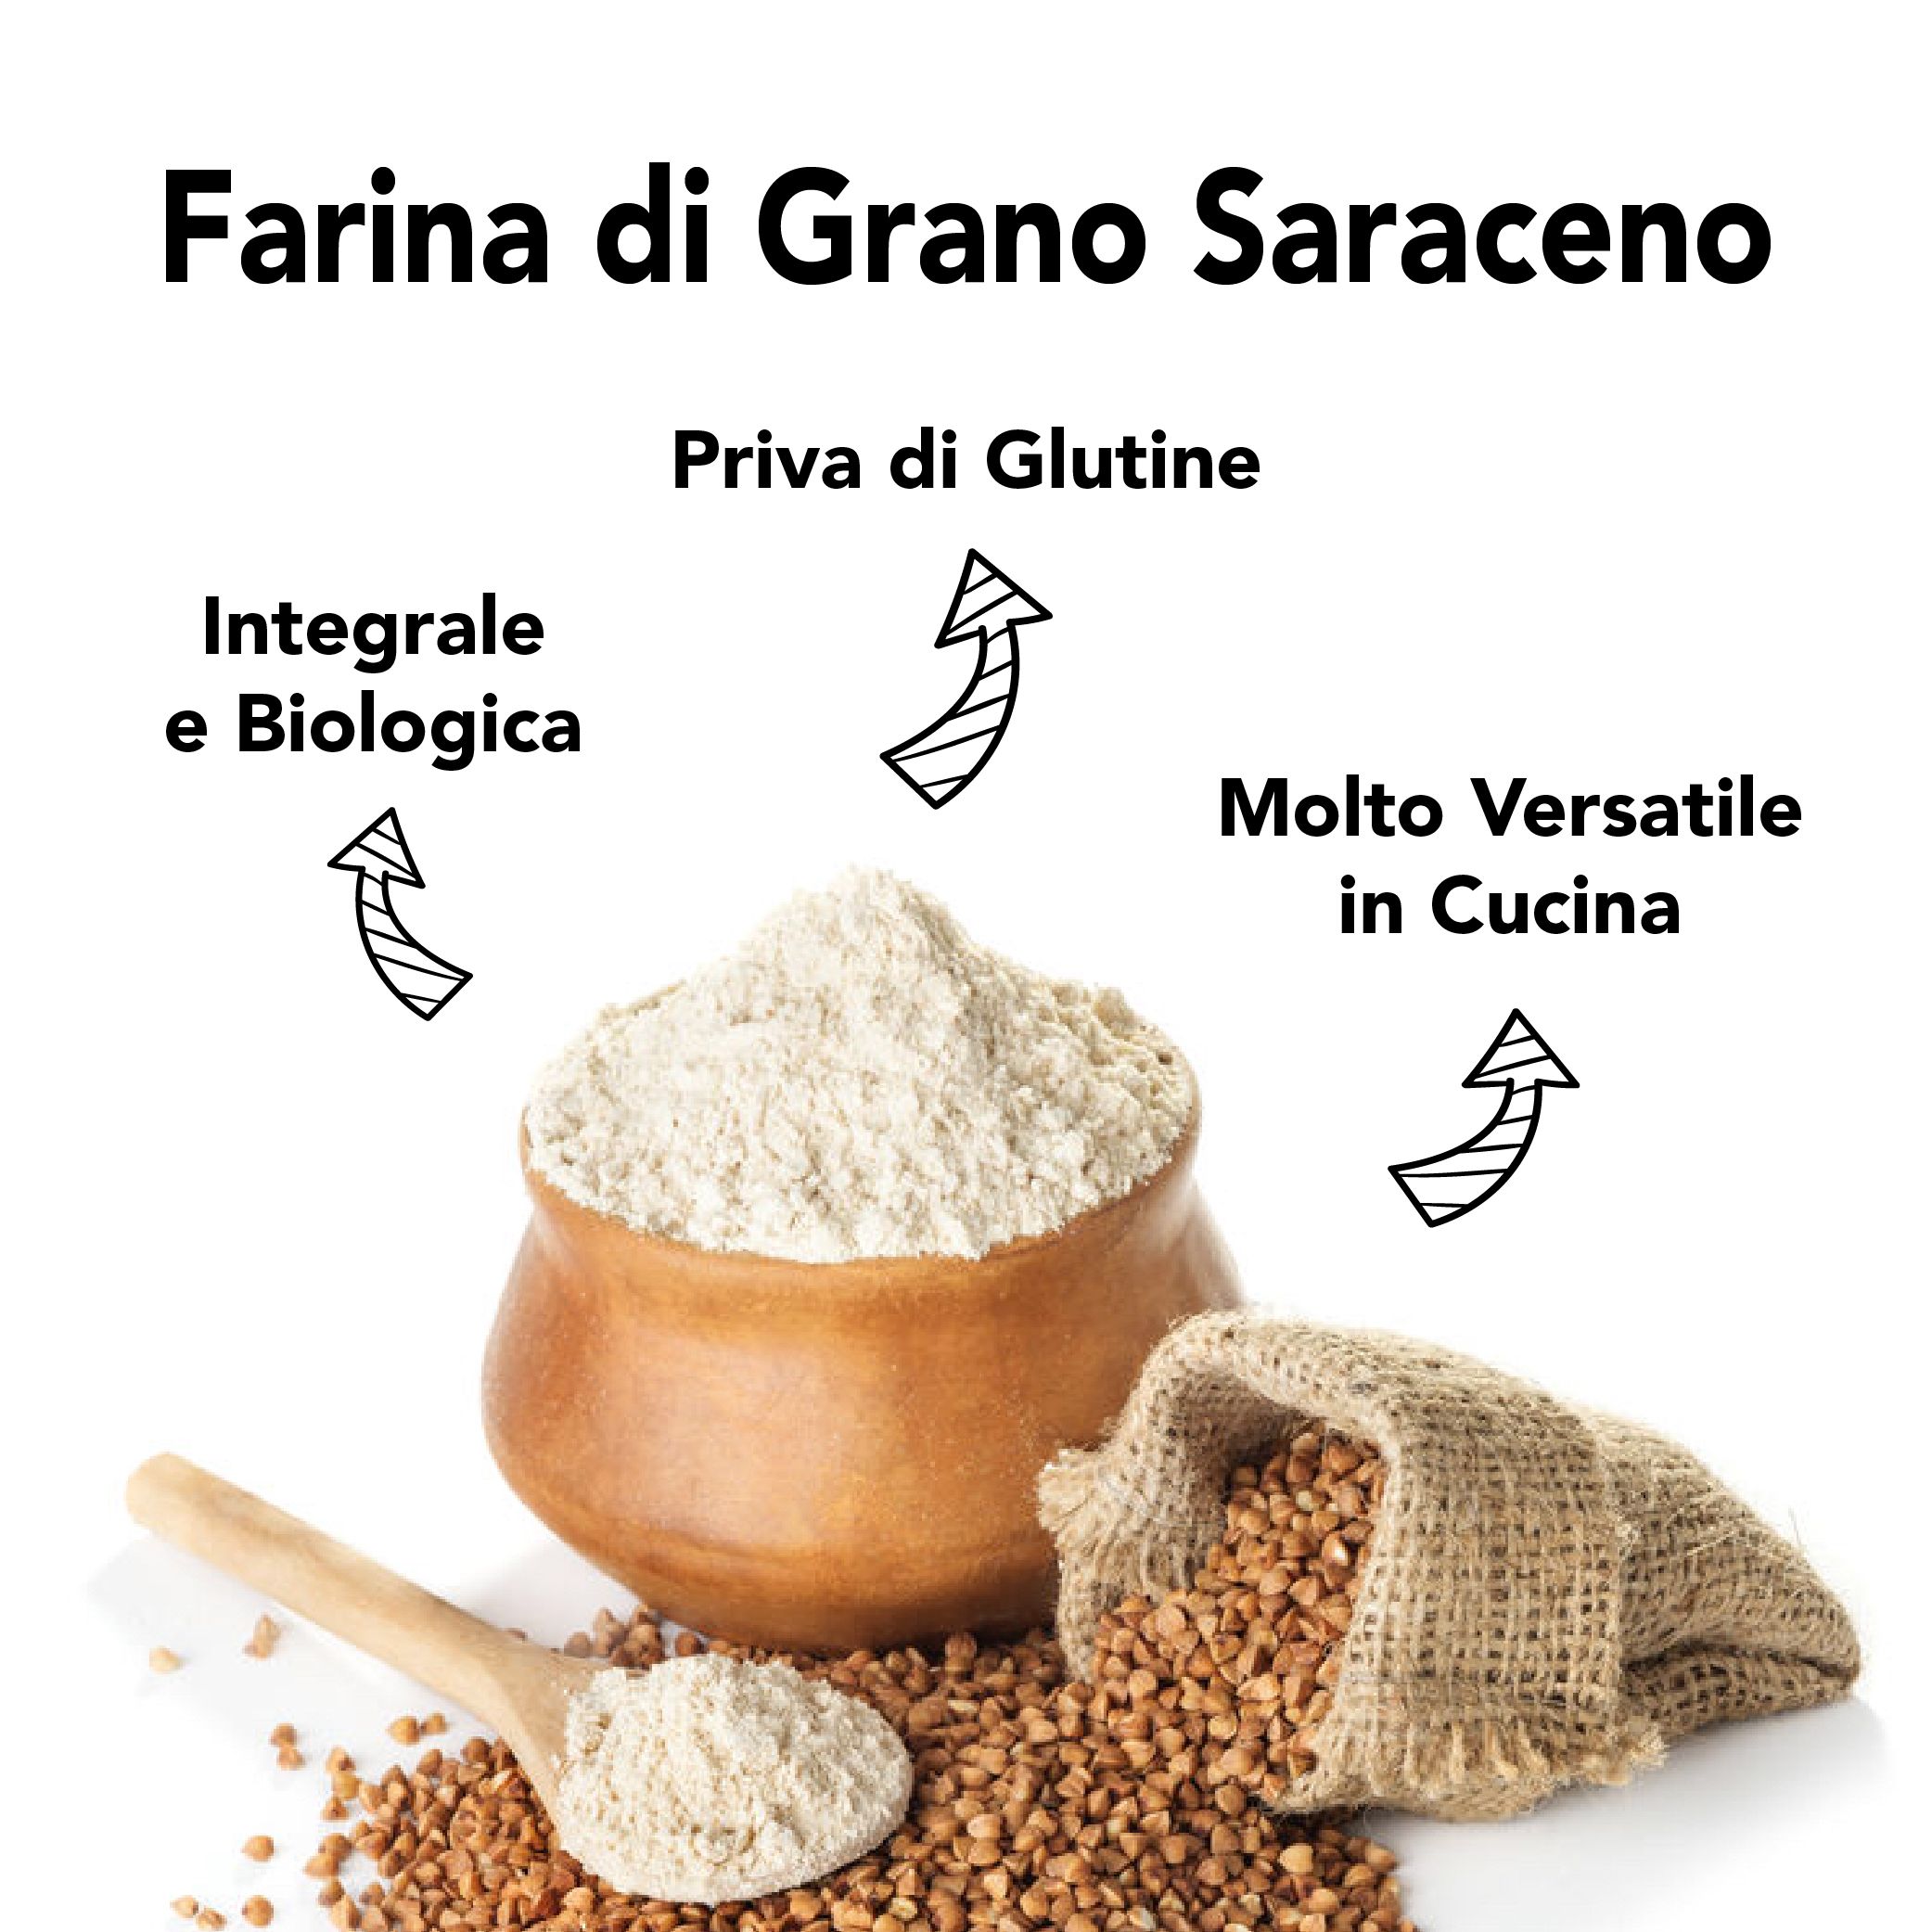 Farina bio di grano saraceno integrale Senza Glutine